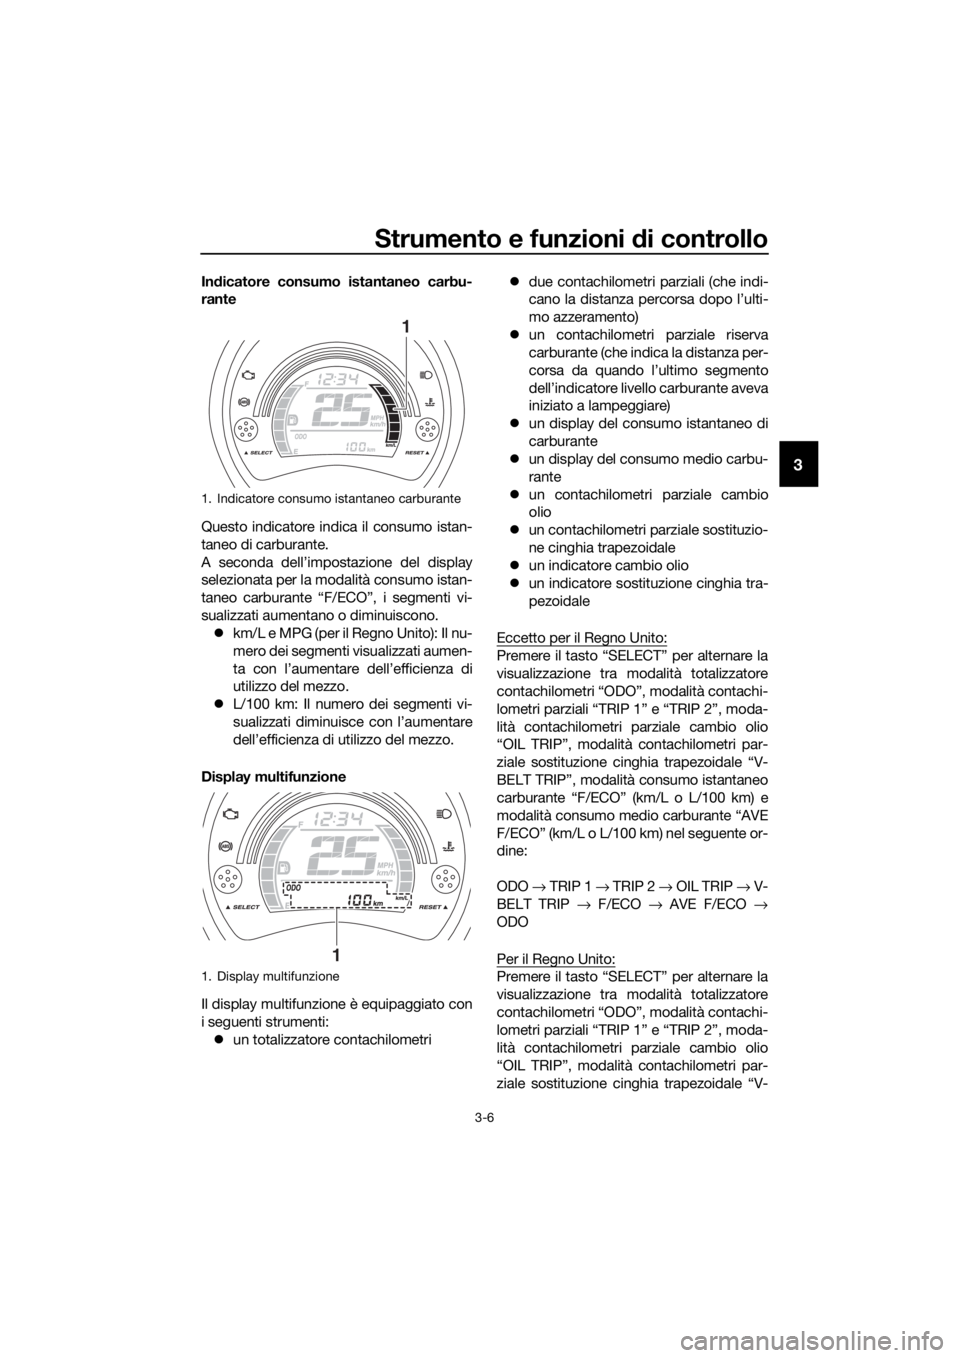 YAMAHA NMAX 150 2019  Manuale duso (in Italian) Strumento e funzioni di controllo
3-6
3
Indicatore consumo istantaneo carbu-
rante
Questo indicatore indica il consumo istan-
taneo di carburante.
A seconda dell’impostazione del display
selezionata